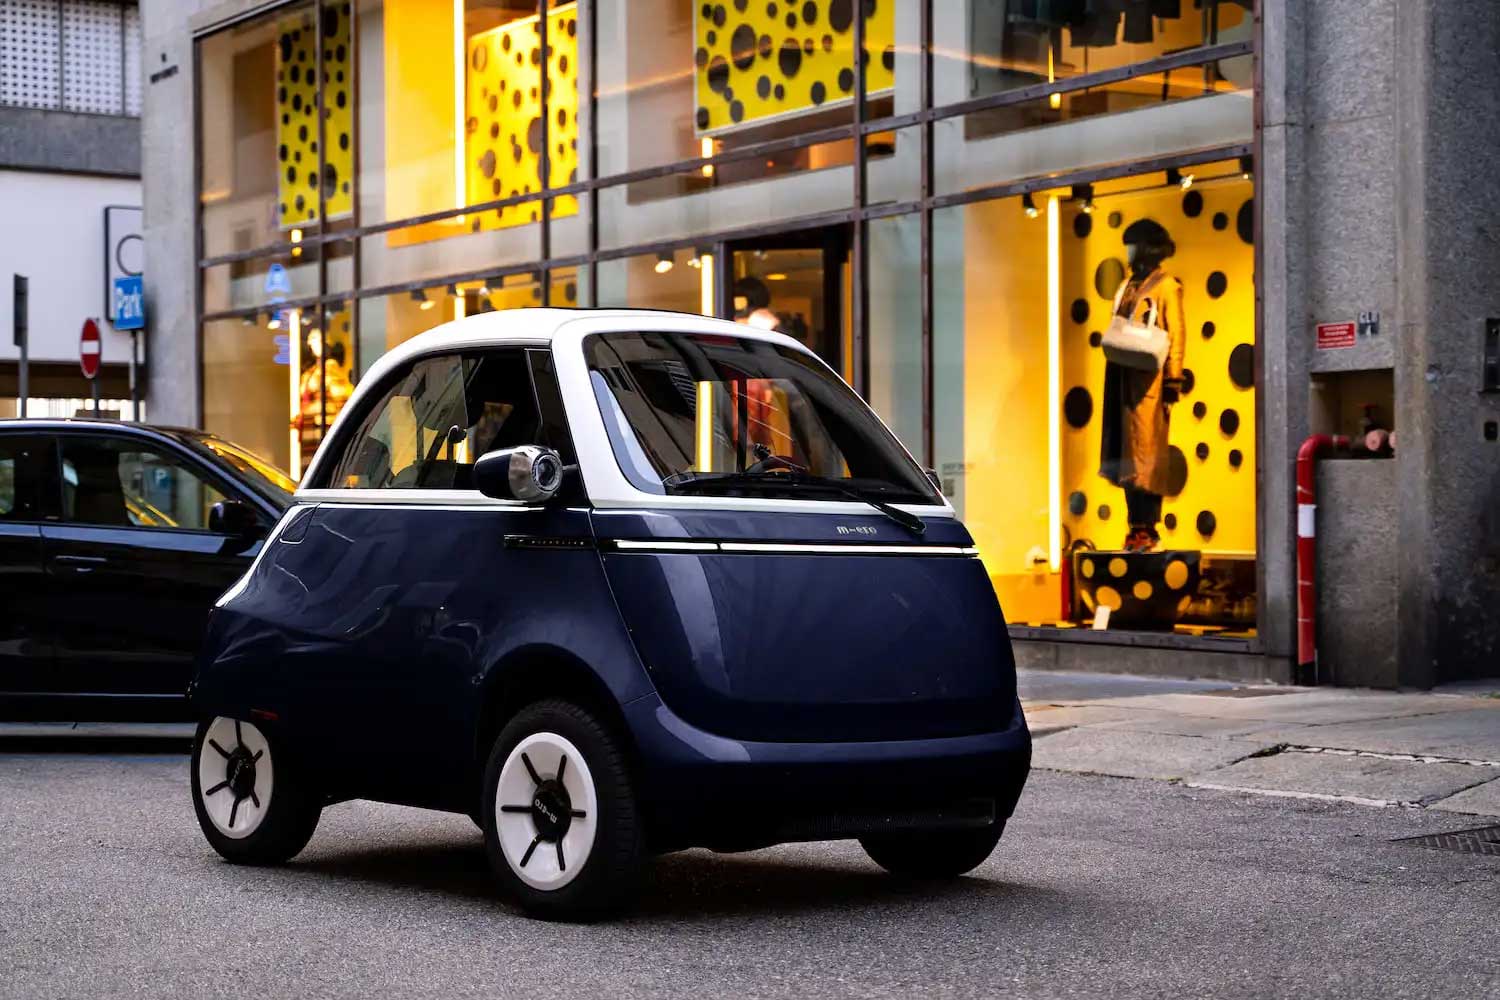 Microlino : la petite voiture électrique low-cost est enfin là !